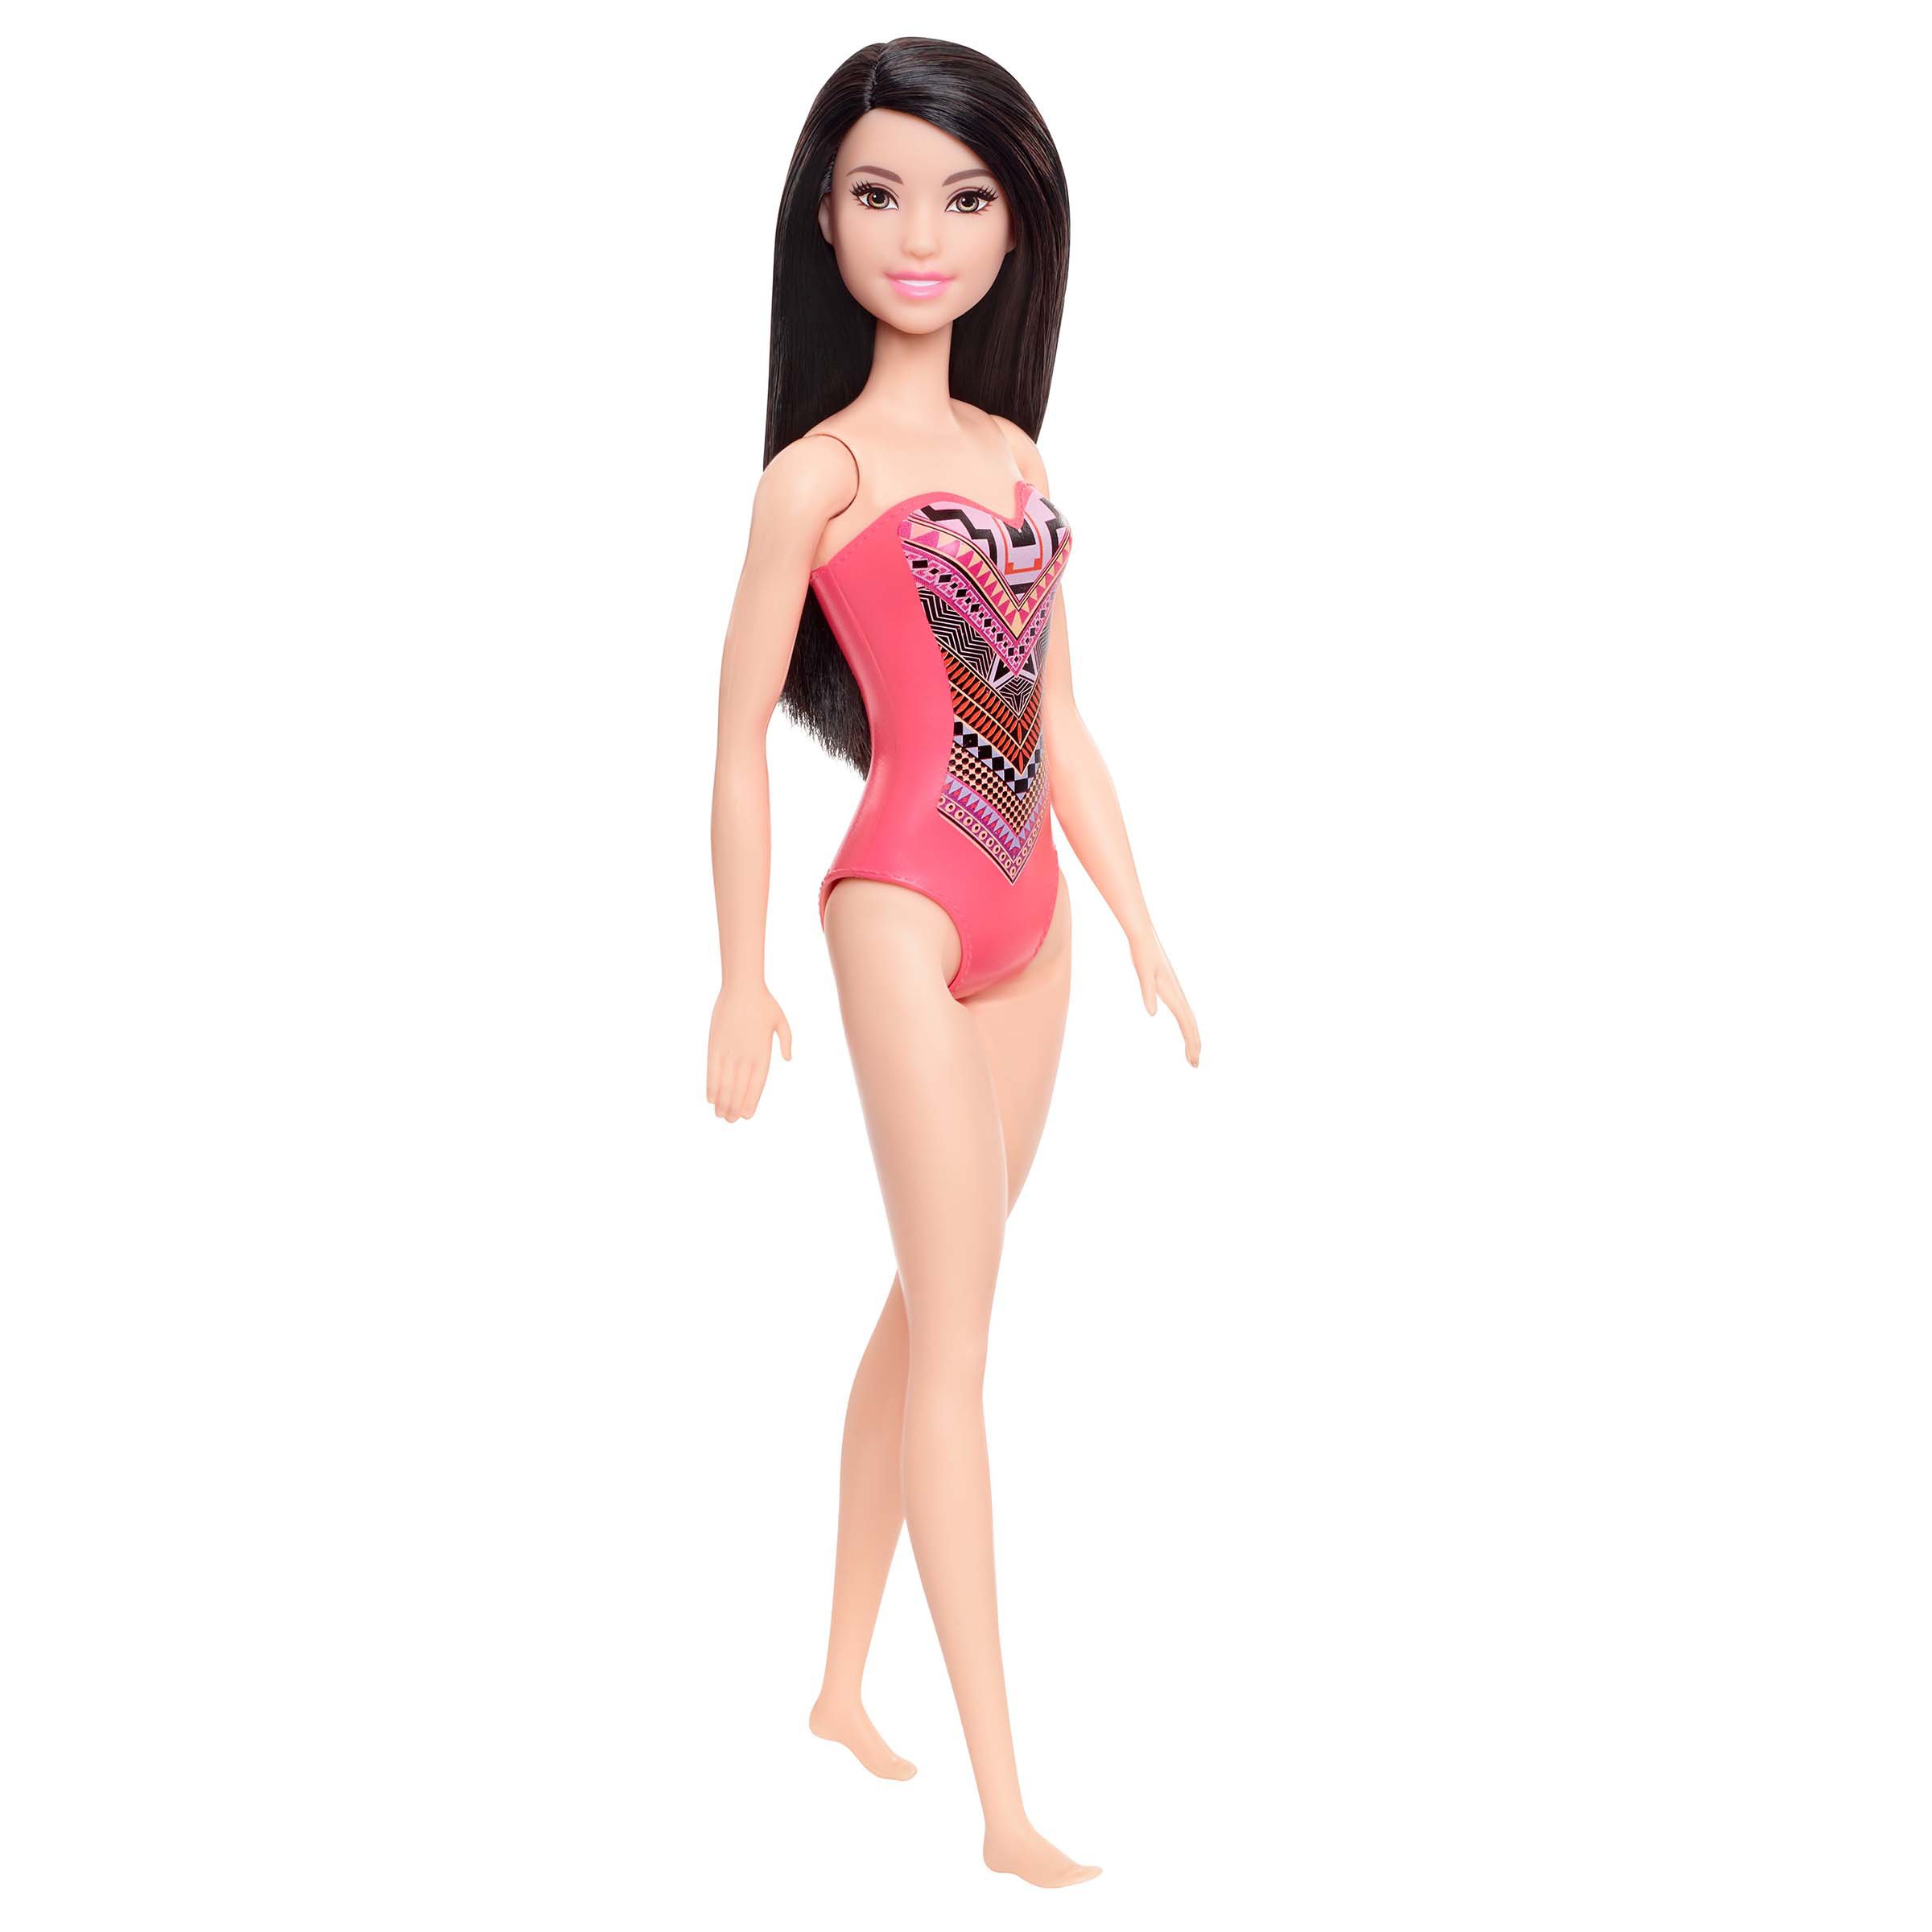 barbie beach raquelle doll